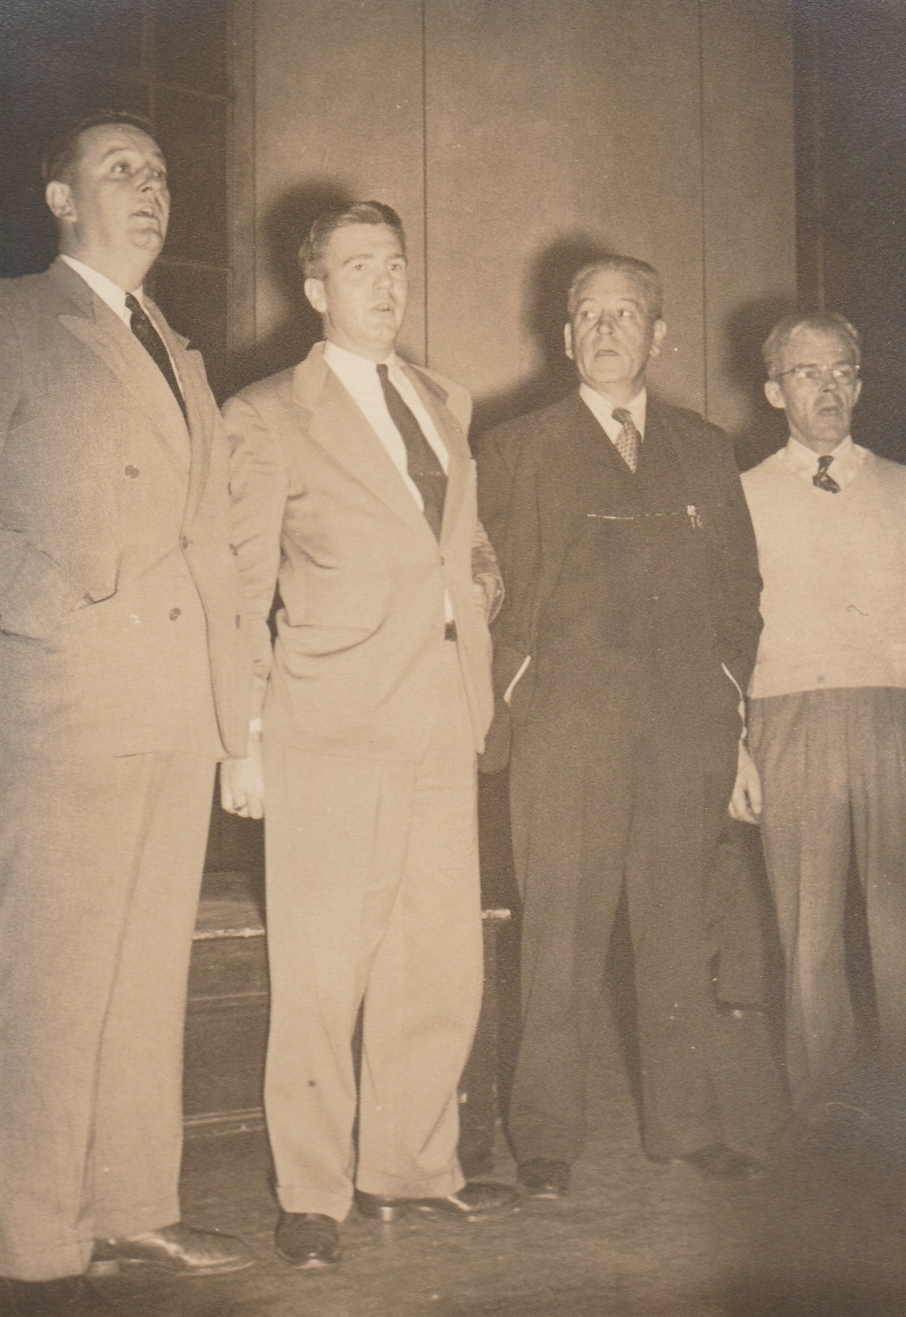 quartet in the 1940s